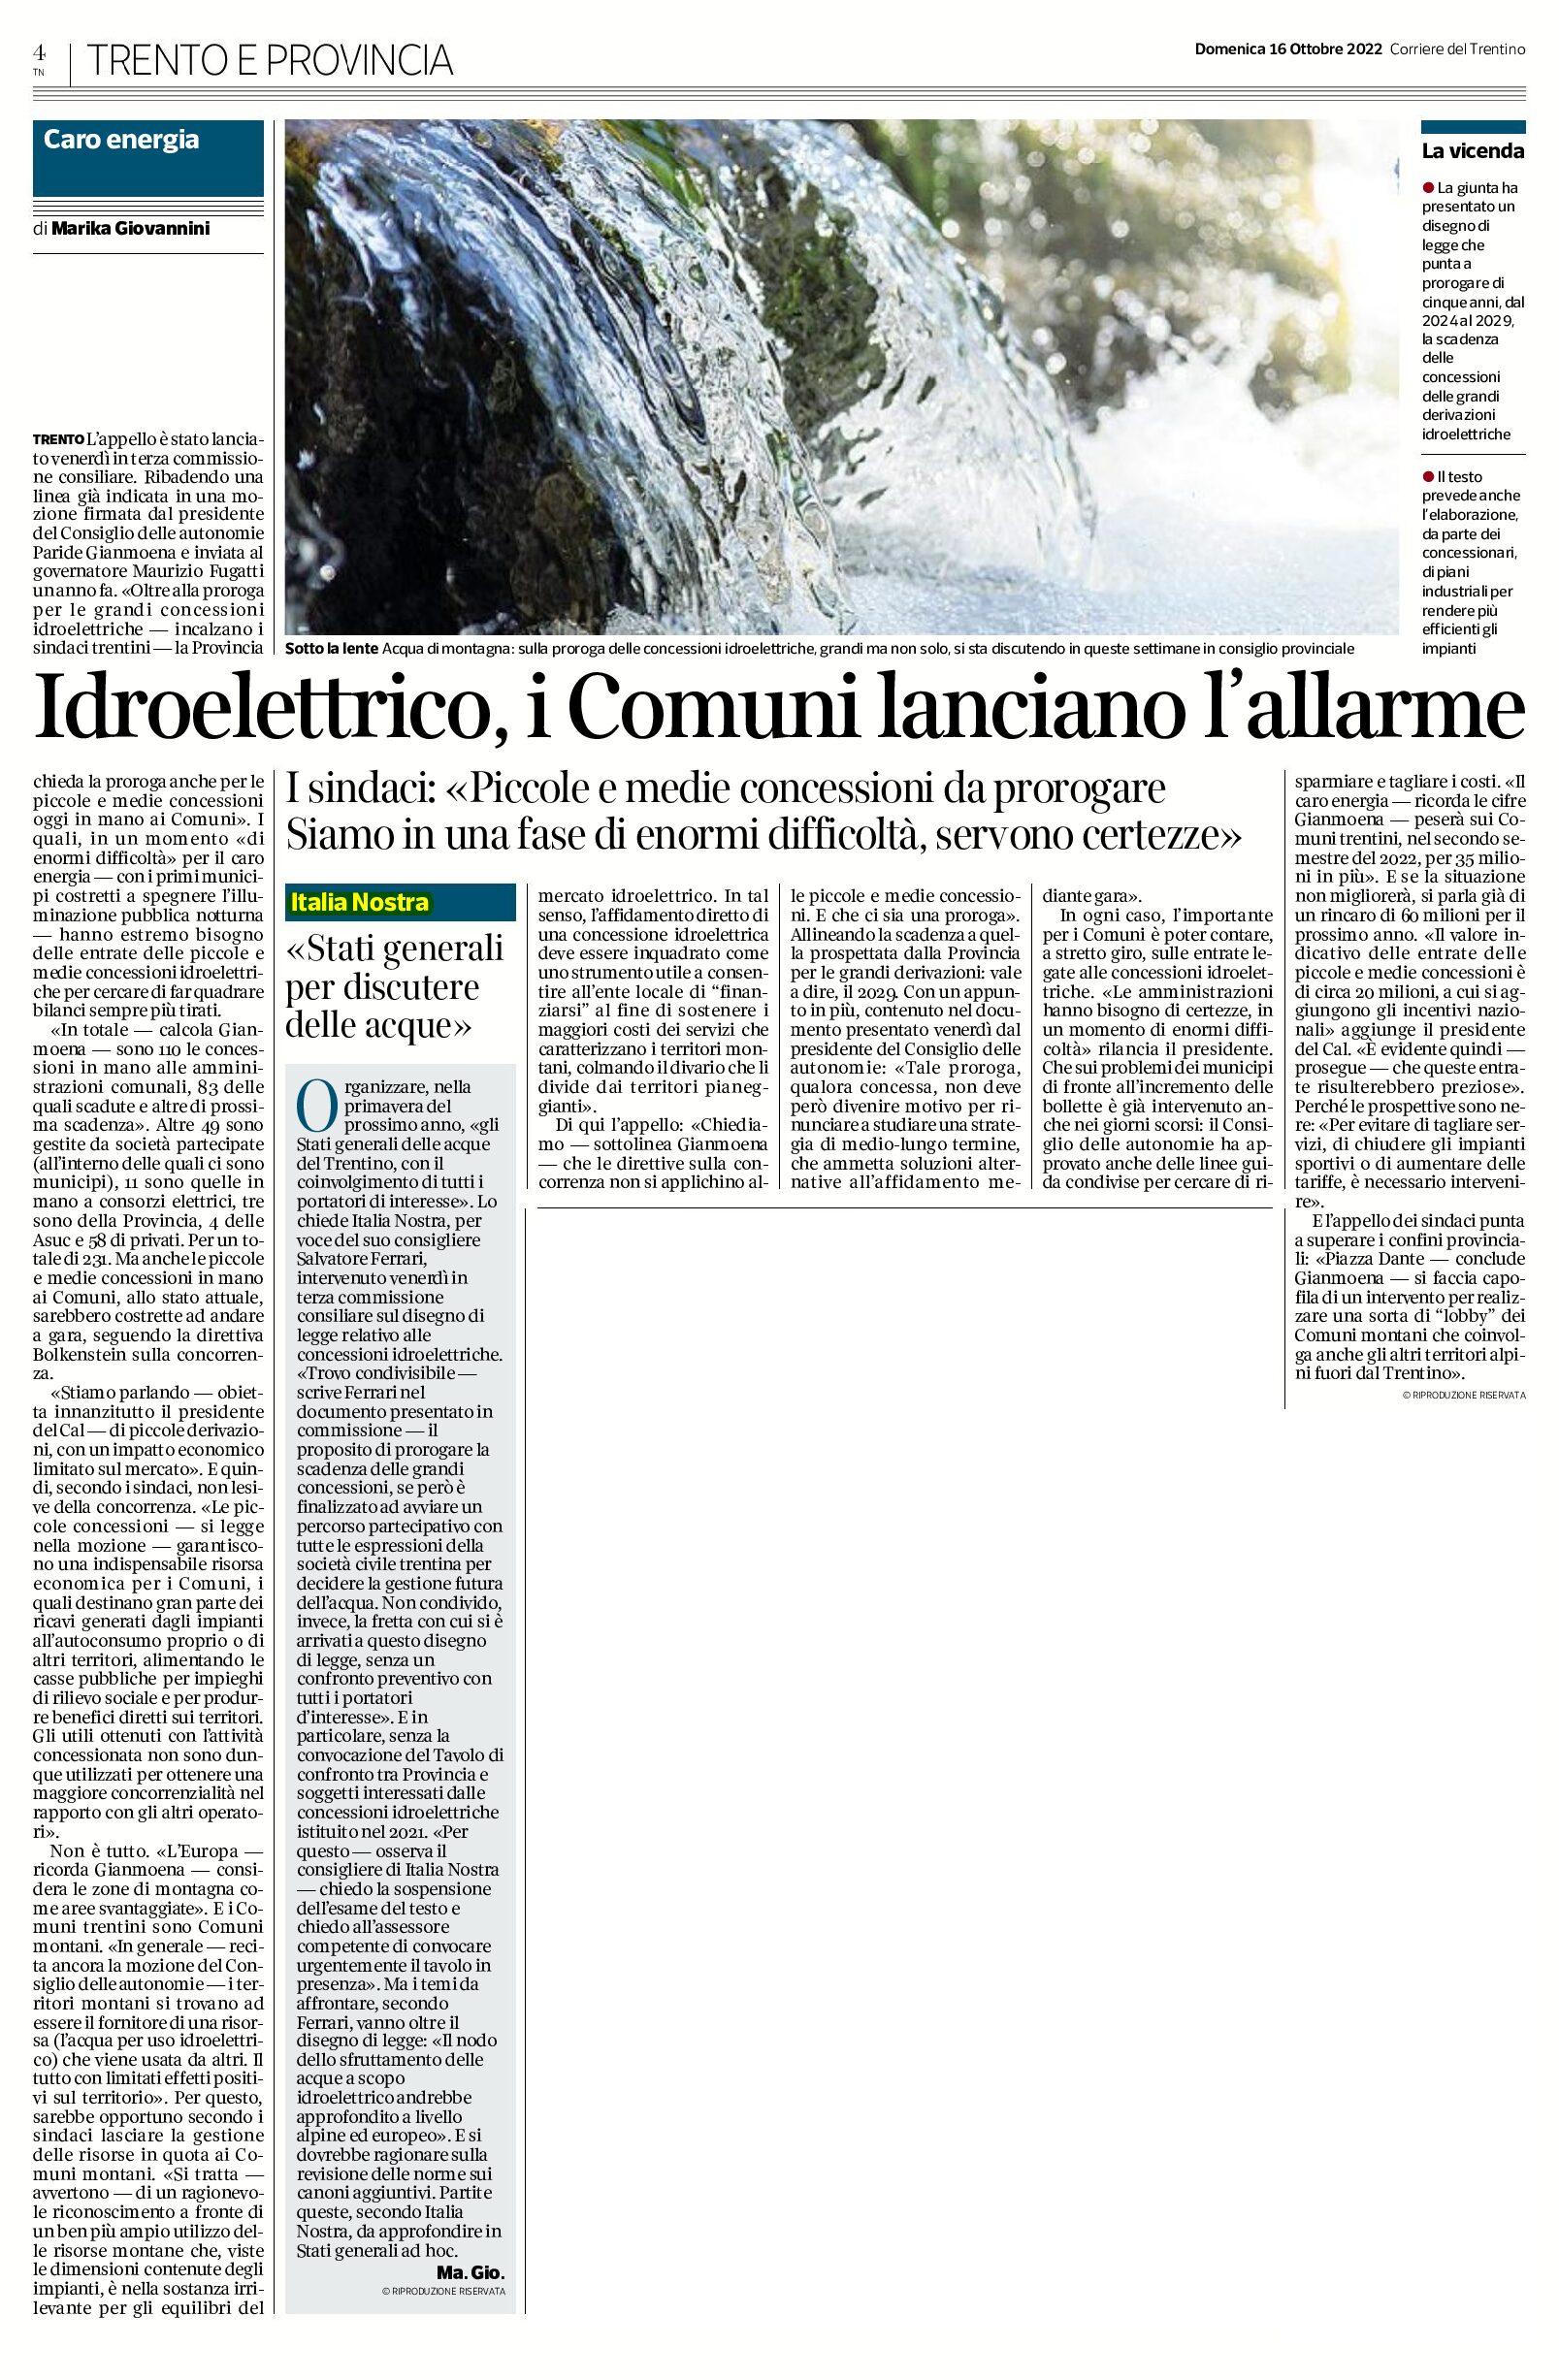 Idroelettrico: Italia Nostra “Stati generali per discutere delle acque”